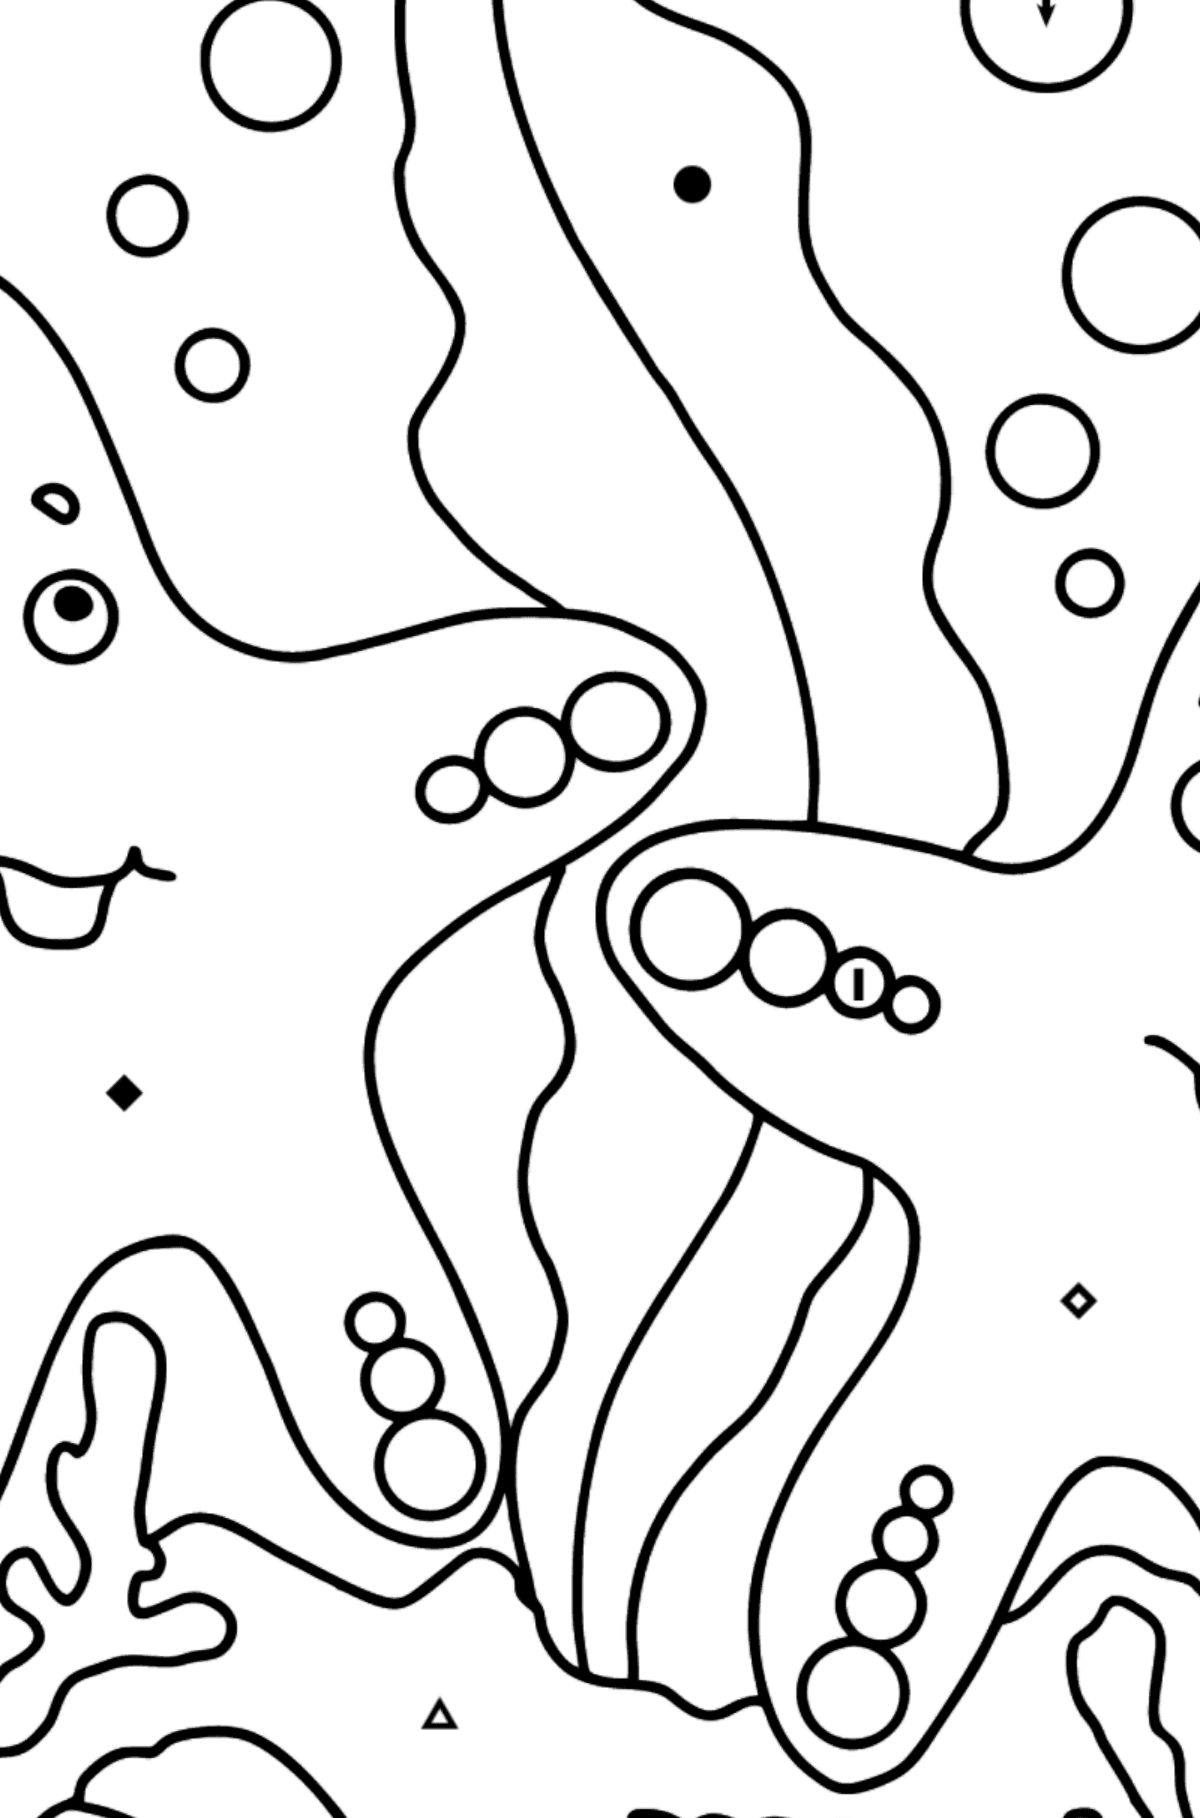 Dibujo para colorear Dos estrellas de mar (fácil) - Colorear por Símbolos para Niños